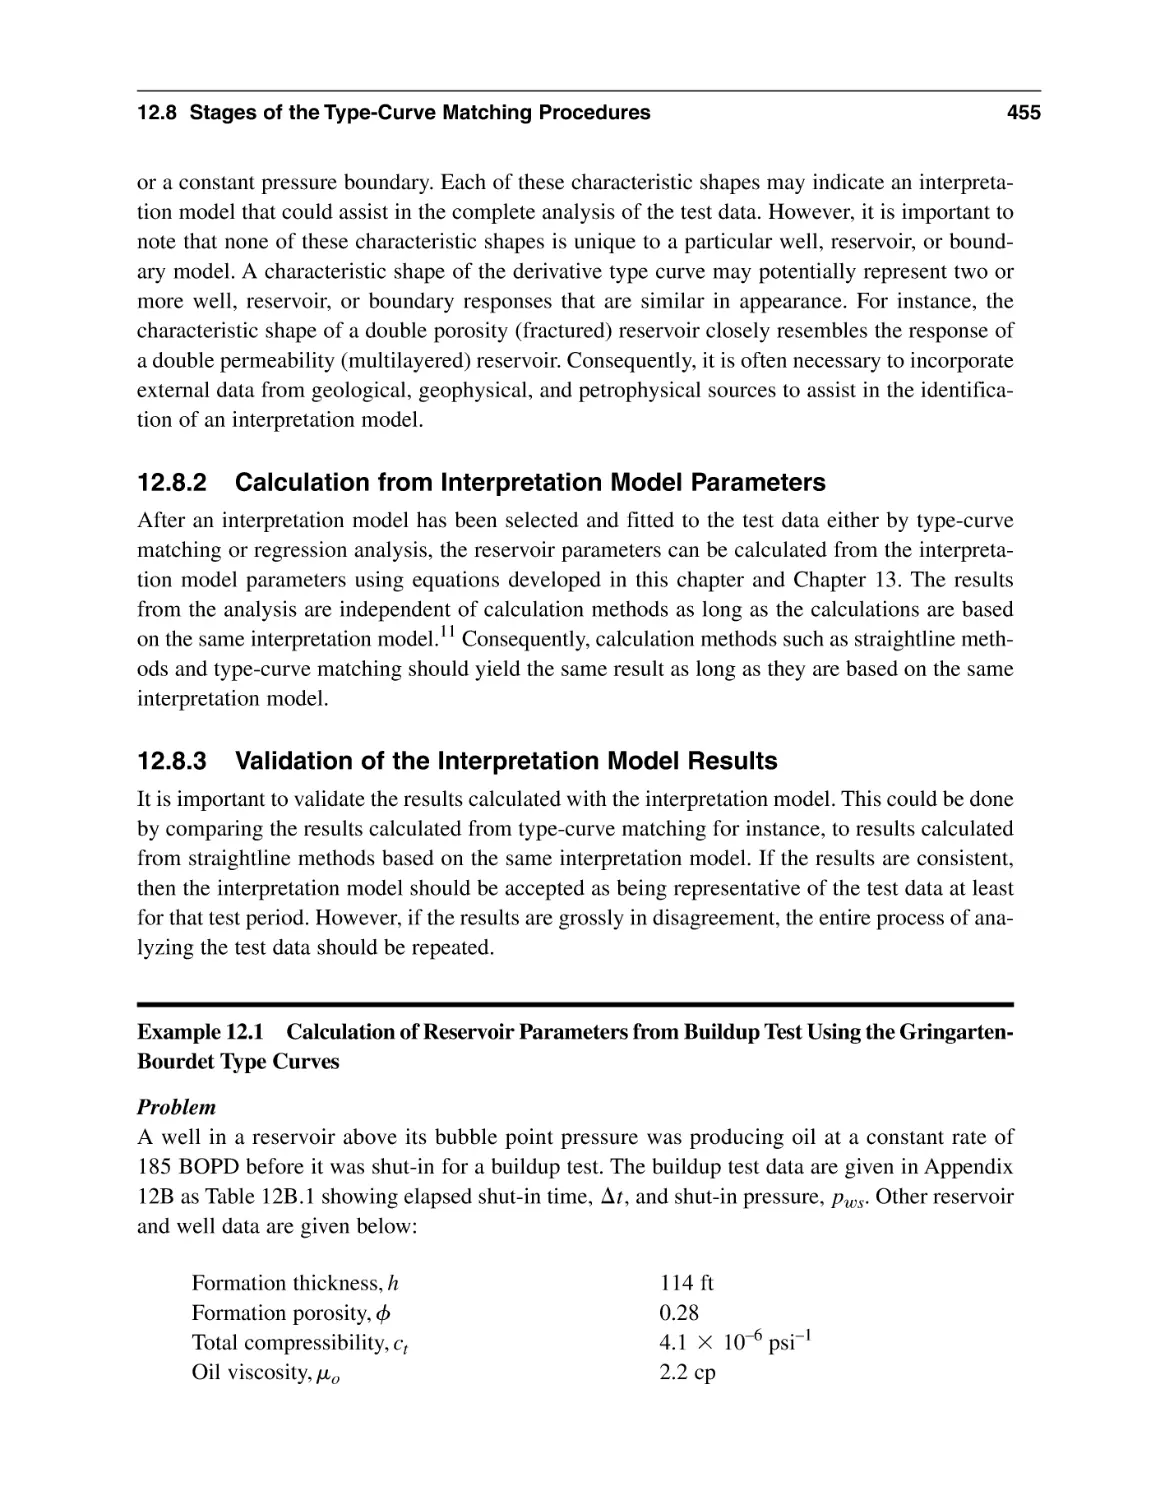 12.8.2 Calculation from Interpretation Model Parameters
12.8.3 Validation of the Interpretation Model Results